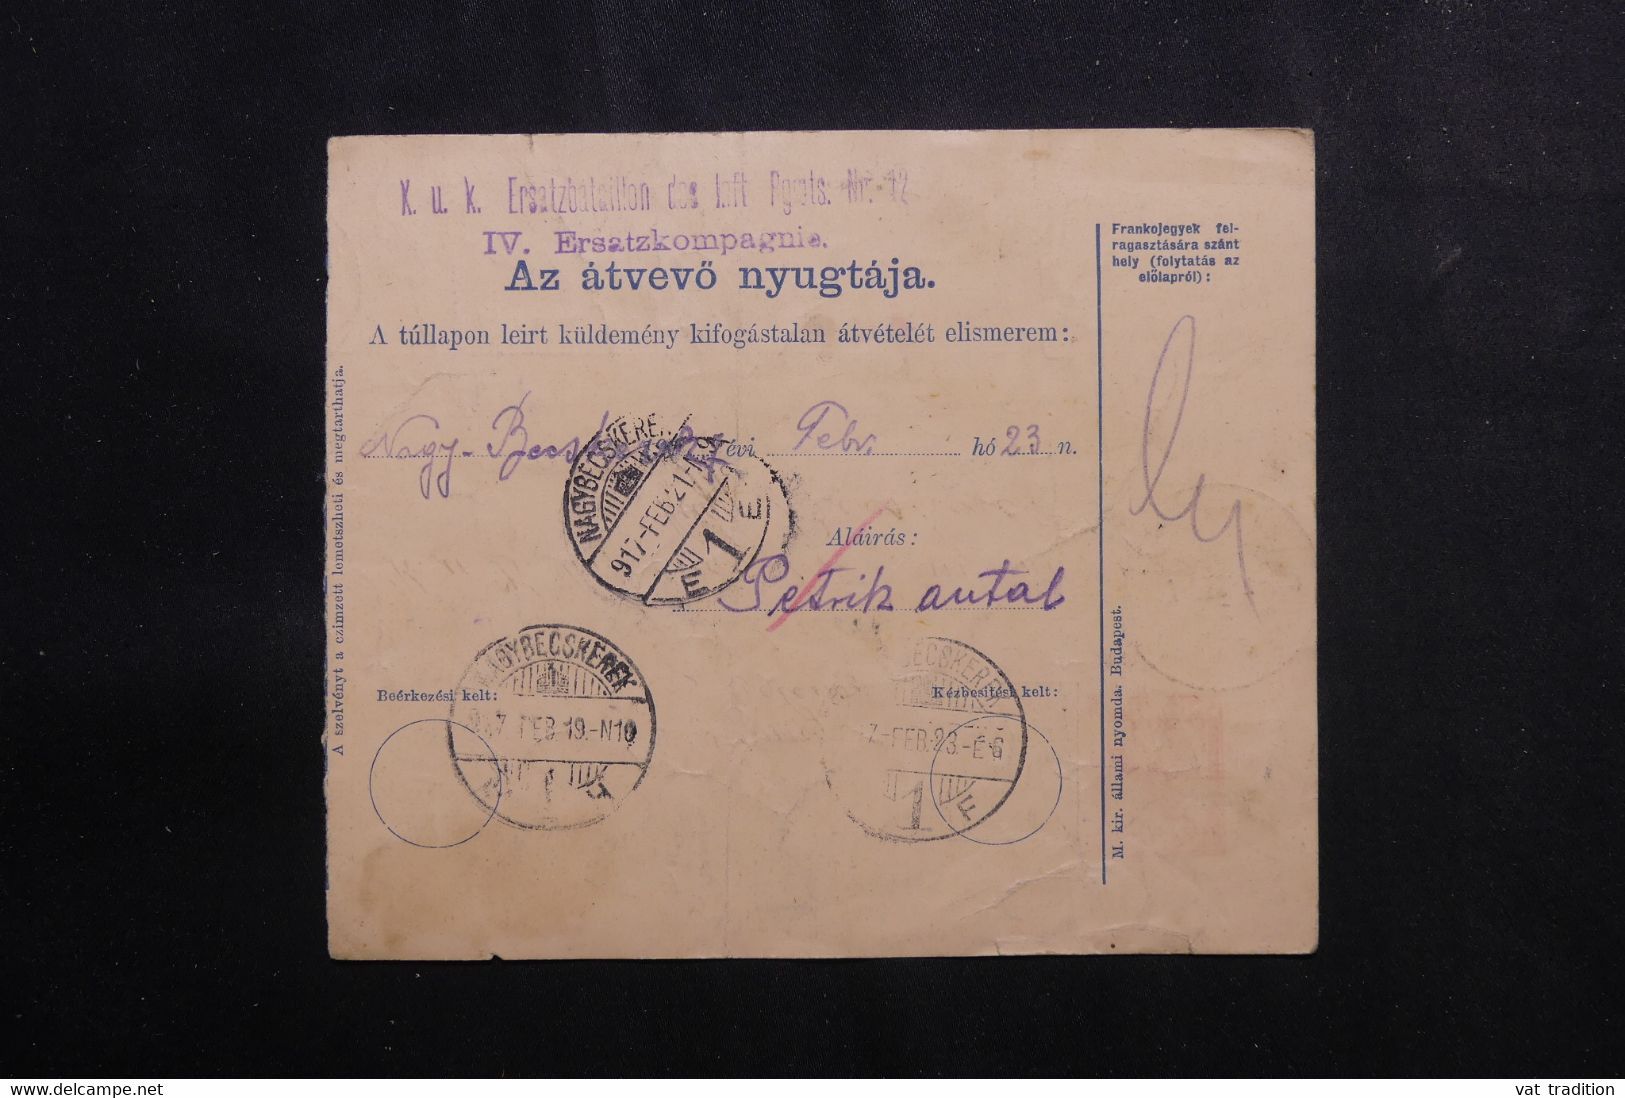 HONGRIE - Bulletin De Colis Postal En 1917 Pour Un Soldat - L 73890 - Colis Postaux